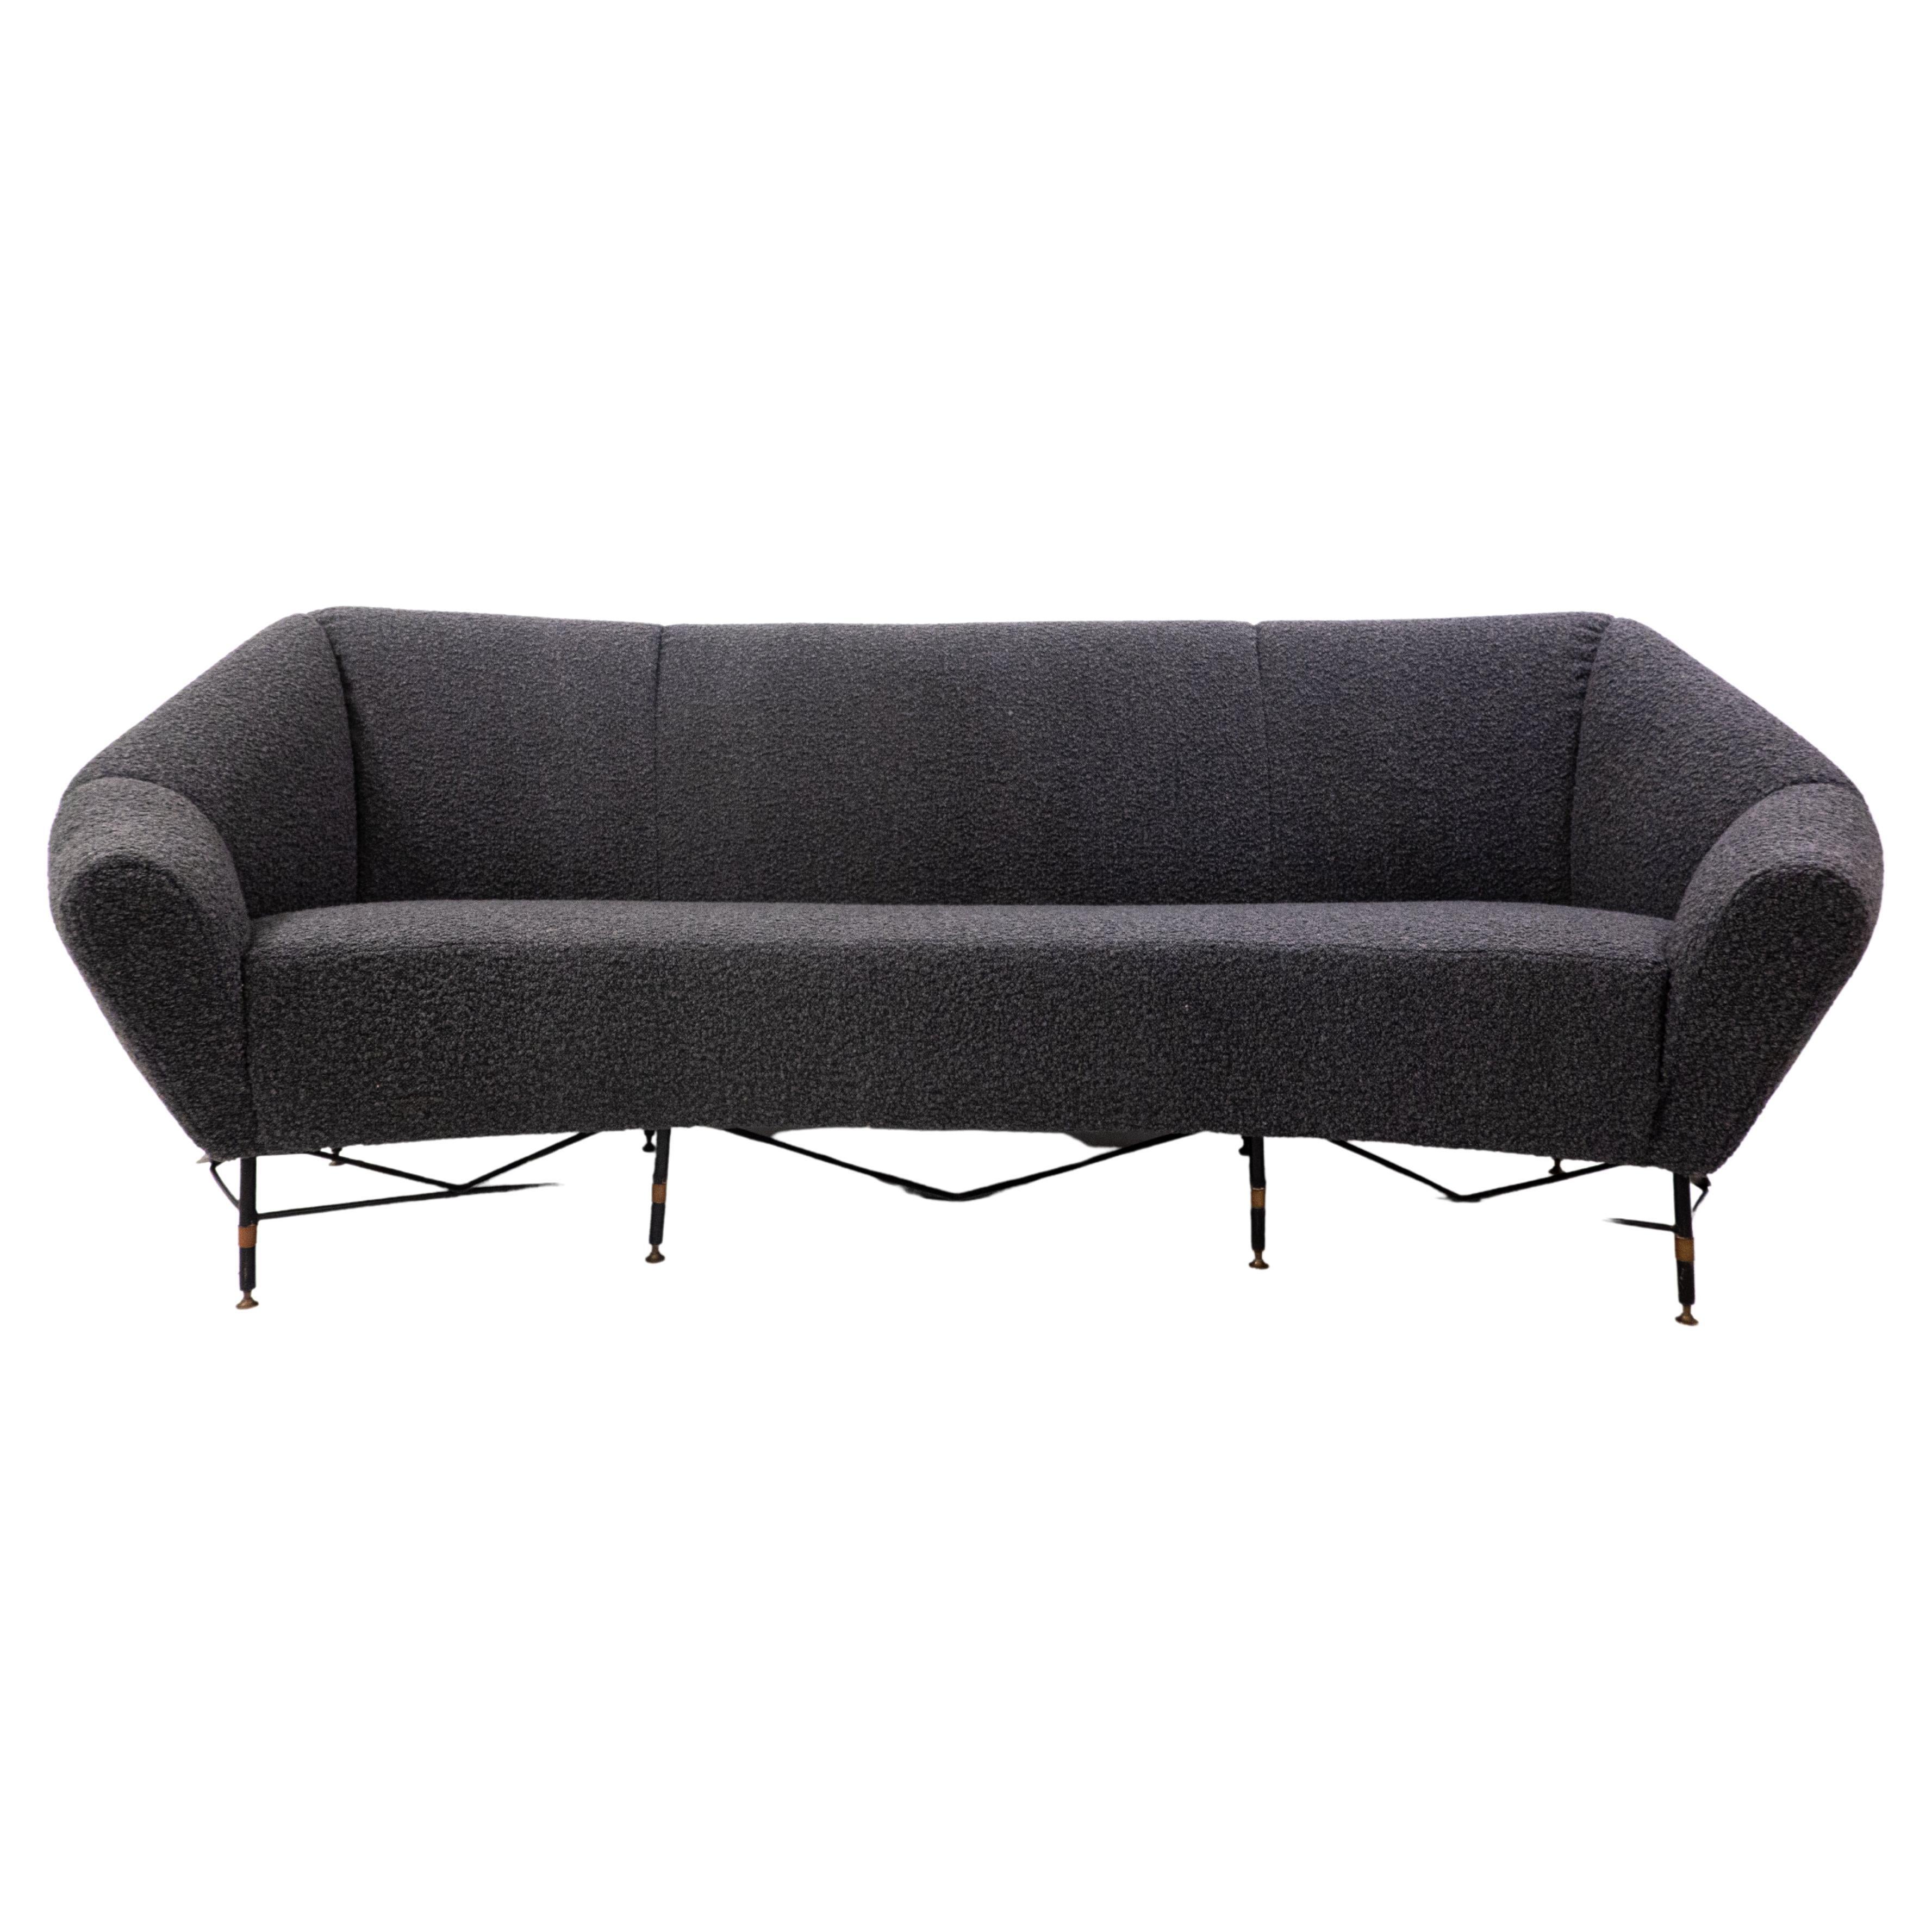 Mid-Century Modern Italian Sofa, 1950s, New Upholstery Black Bouclette